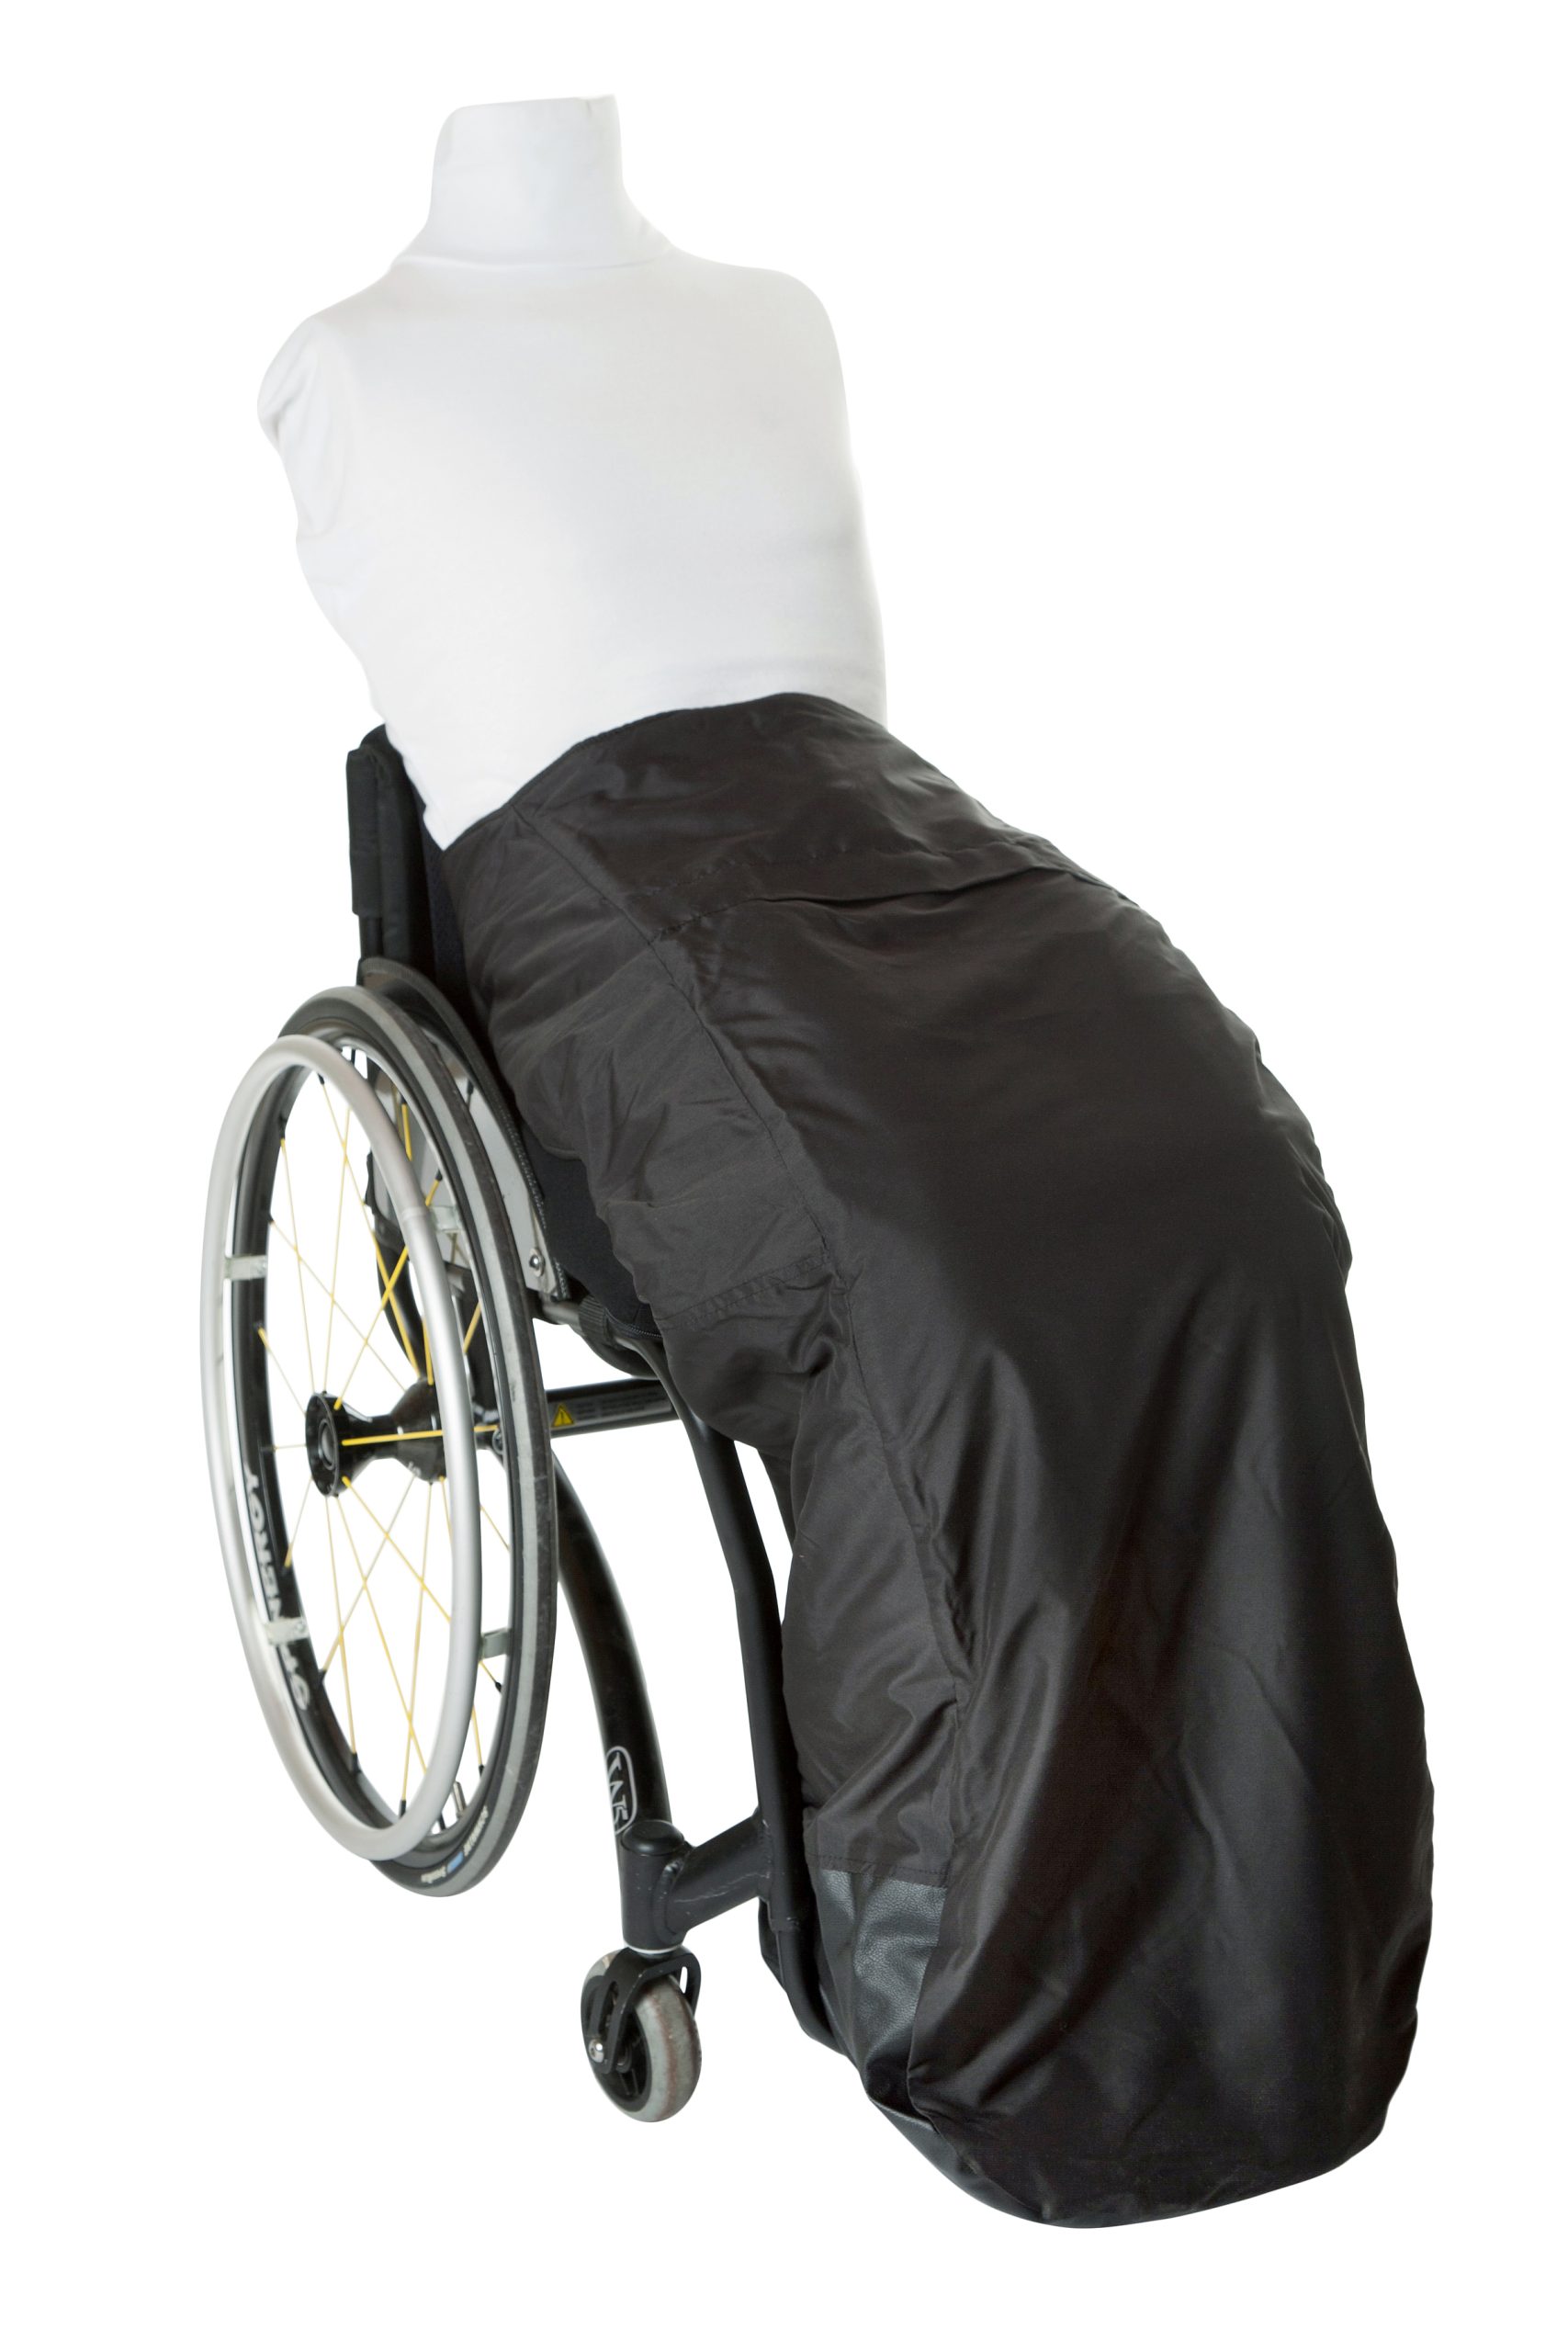 Skubbe Hvis Objector Easy Kørepose fra Handy Wear kan bruges af alle kørestolsbrugere.